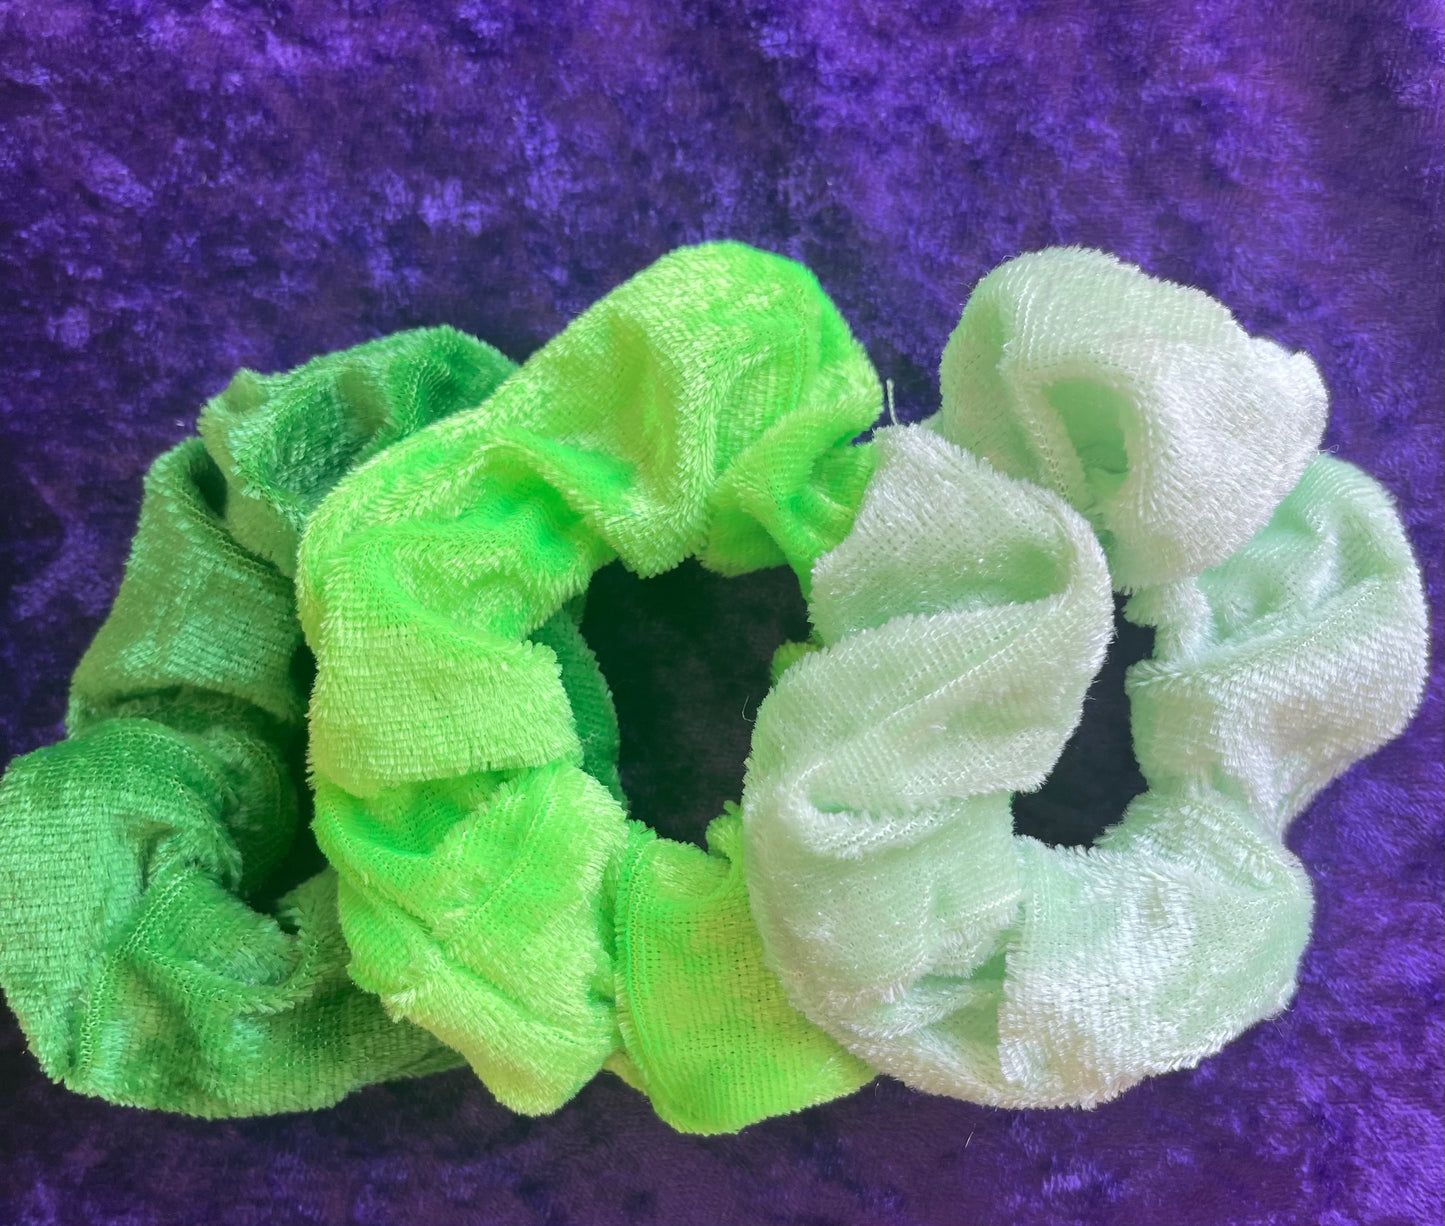 Velvet Scrunchie Set- 3 scrunchies for $1